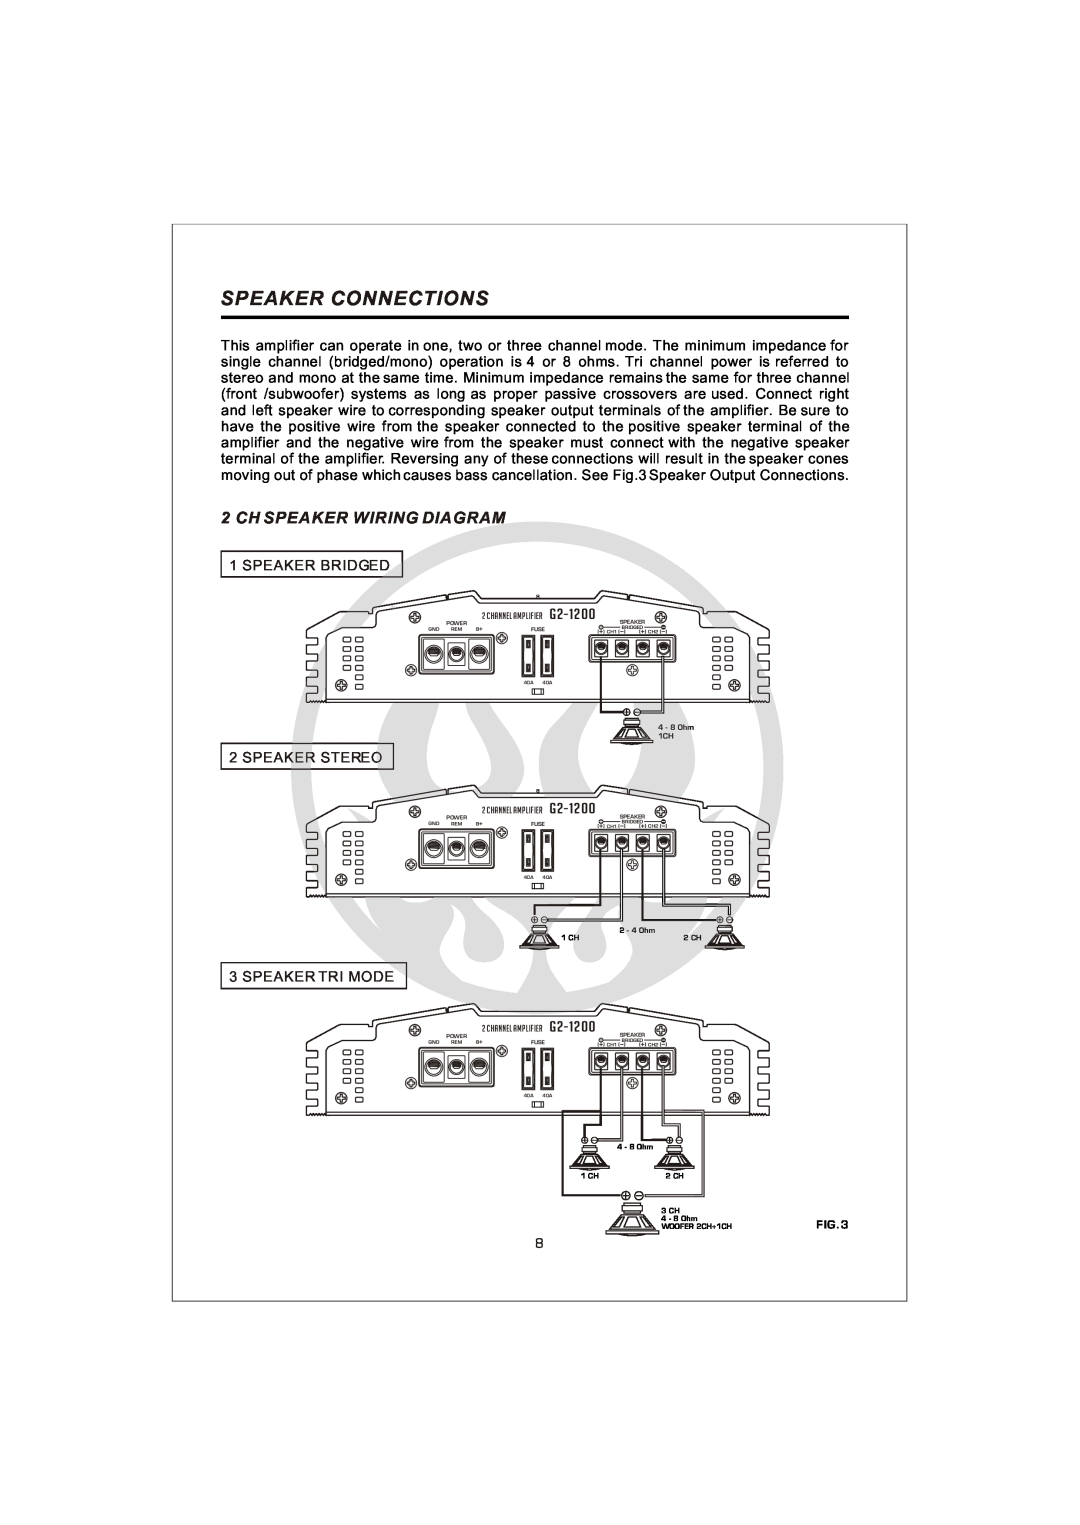 Interfire Audio G4-800, G4-1000, G5-900, G2-800, G4-600, G2-1200, G2-600 Speaker Connections, Ch Speaker Wiring Diagram 